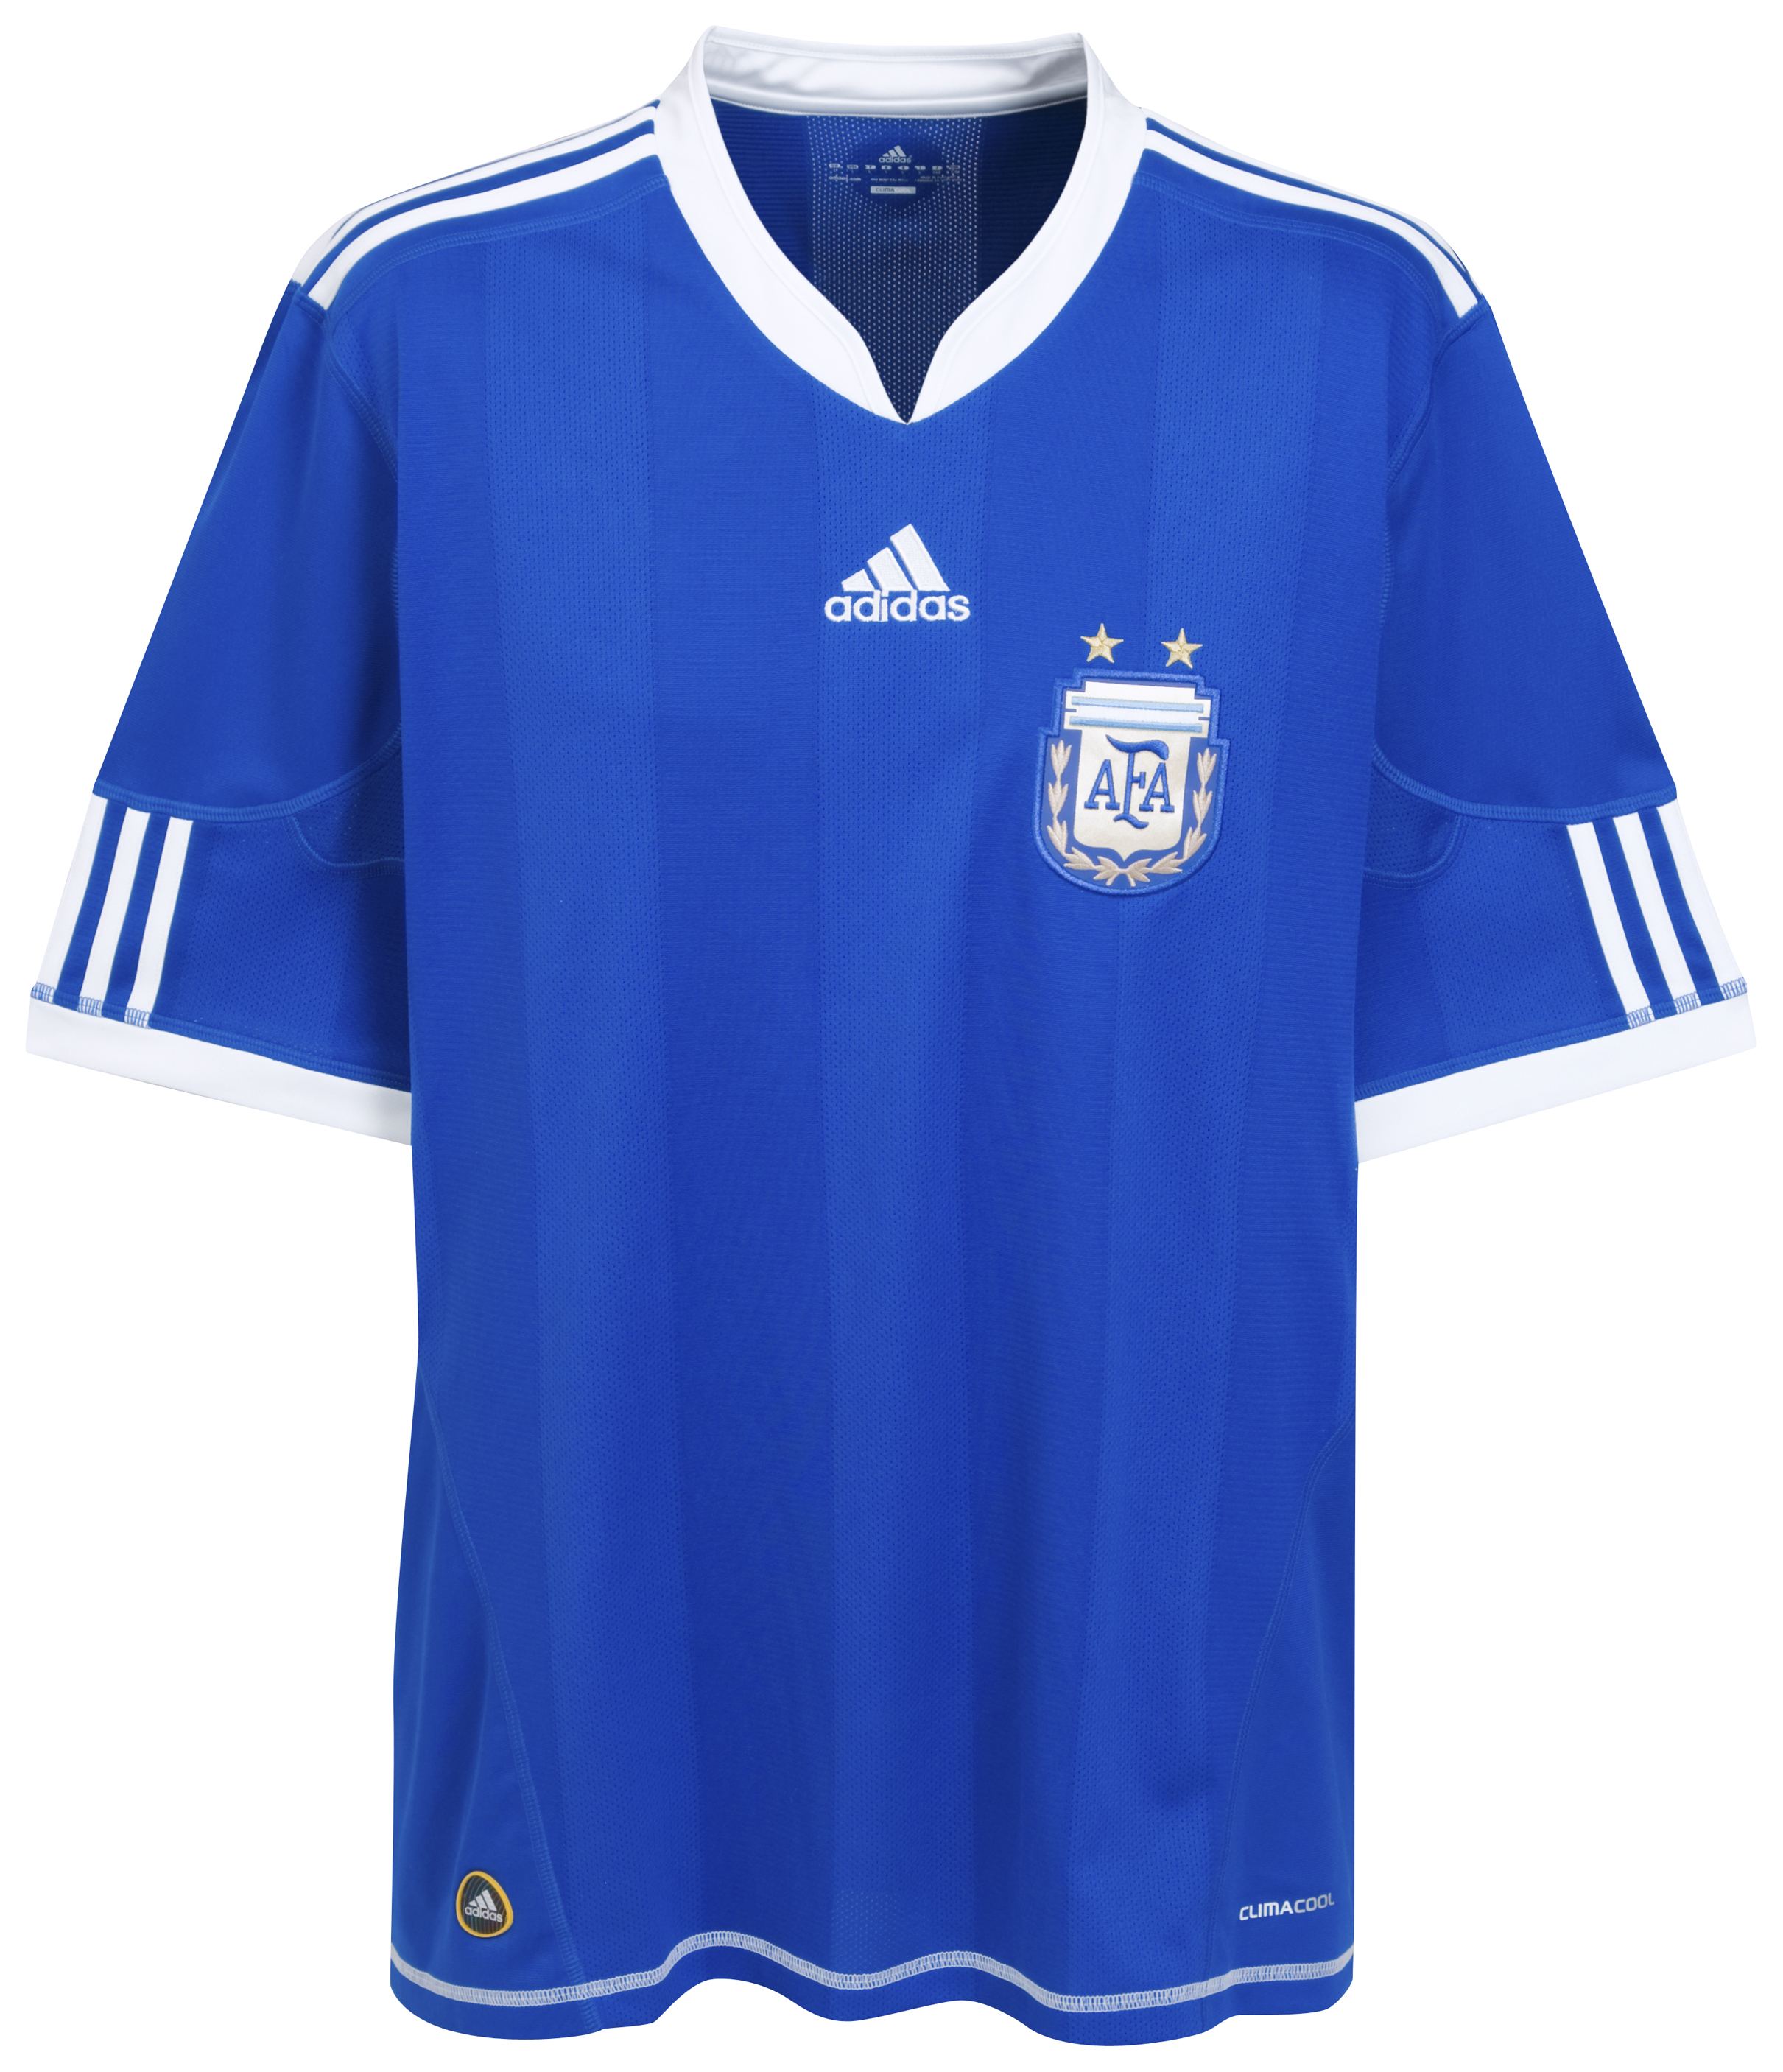 ملابس المنتخبات لكأس العالم2010م Kb-66925